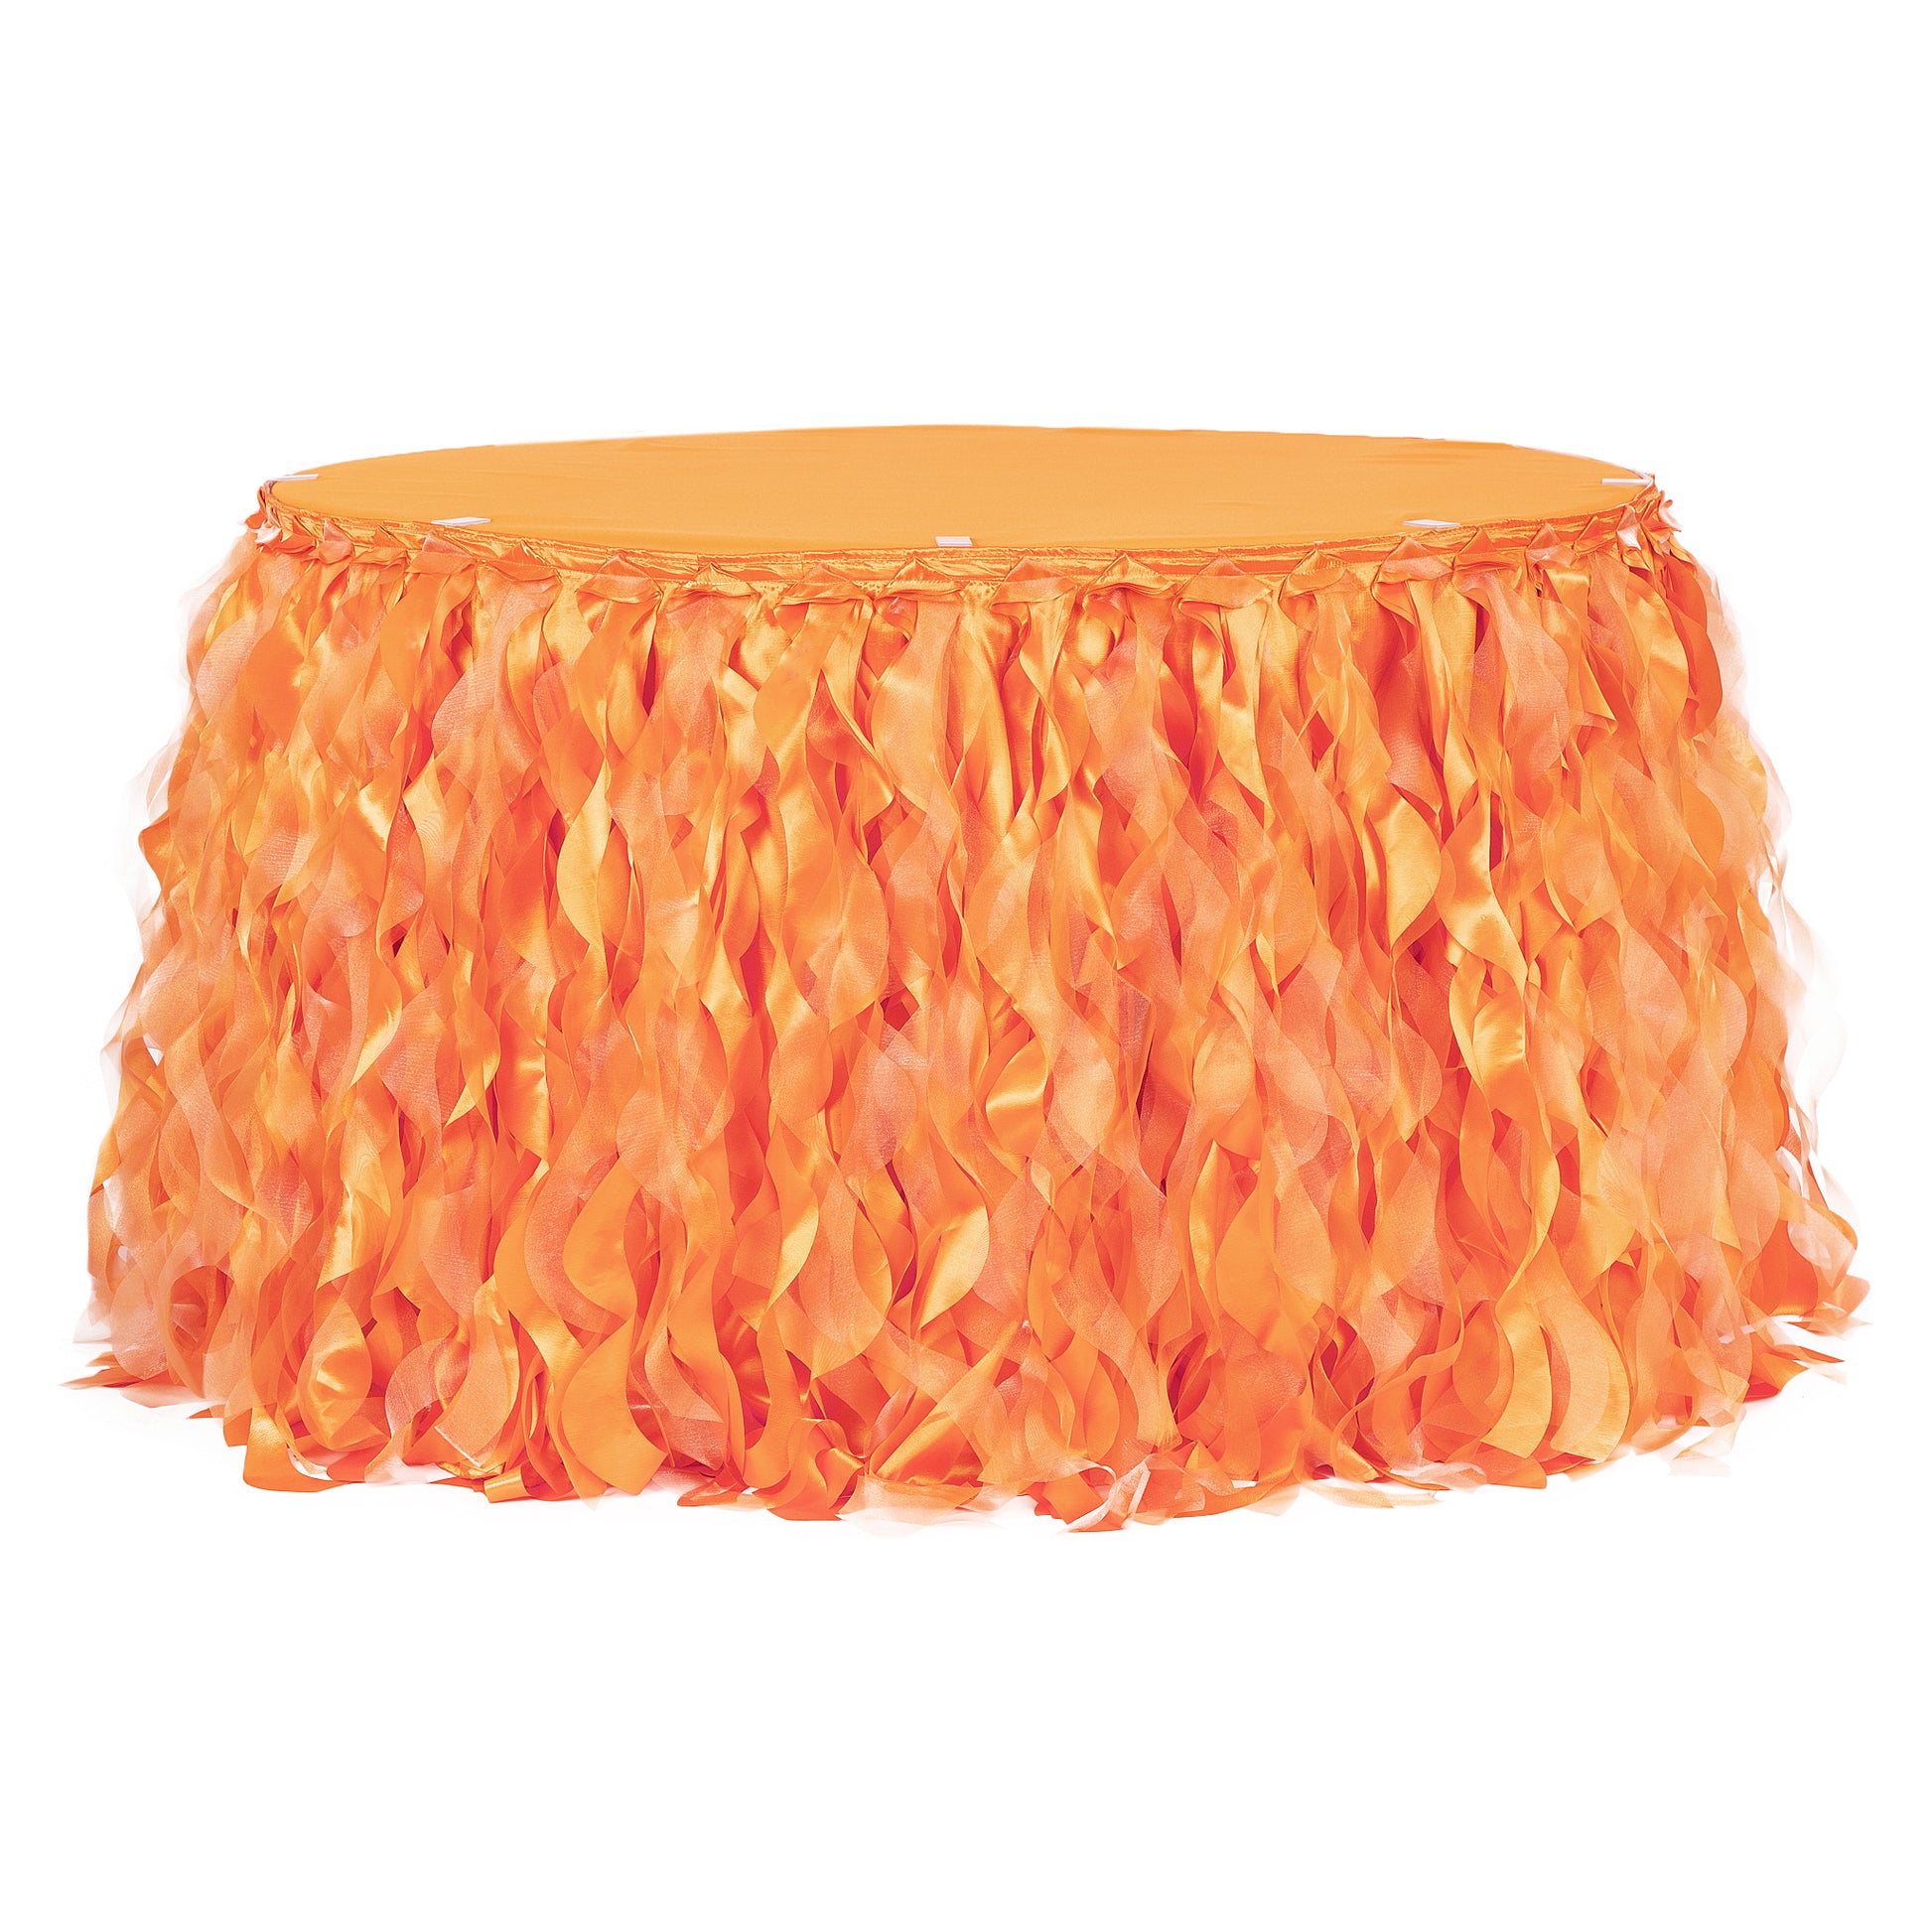 Curly Willow 14ft Table Skirt - Orange - CV Linens